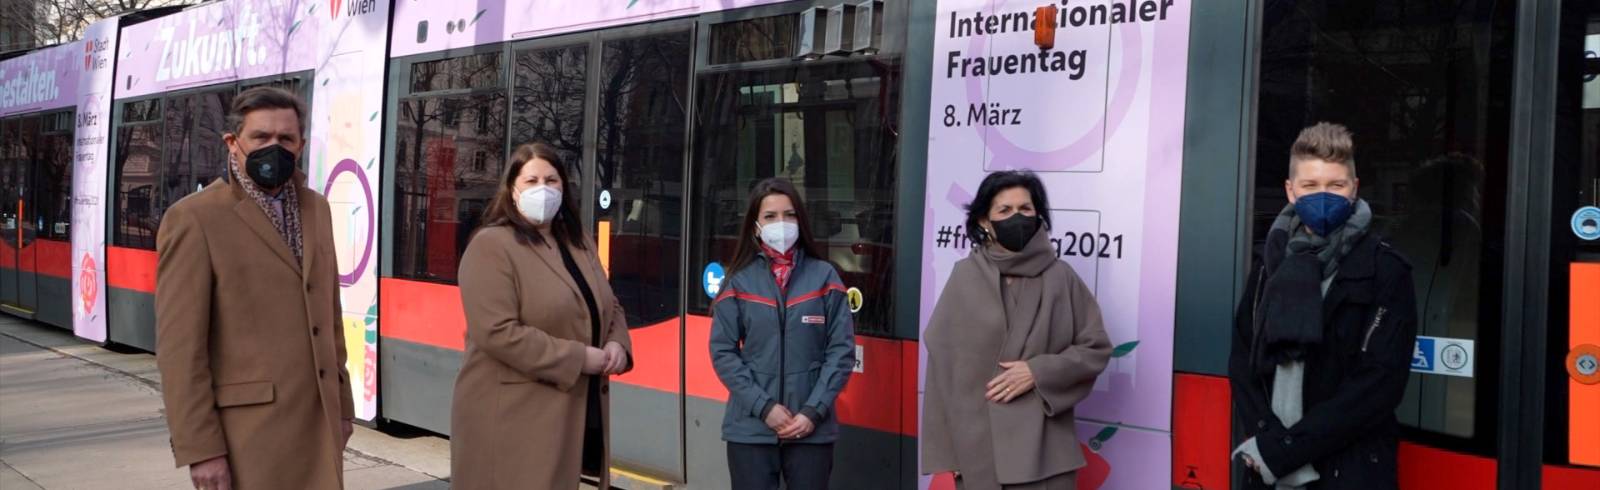 Frauentag: Bim kurvt durch Wien